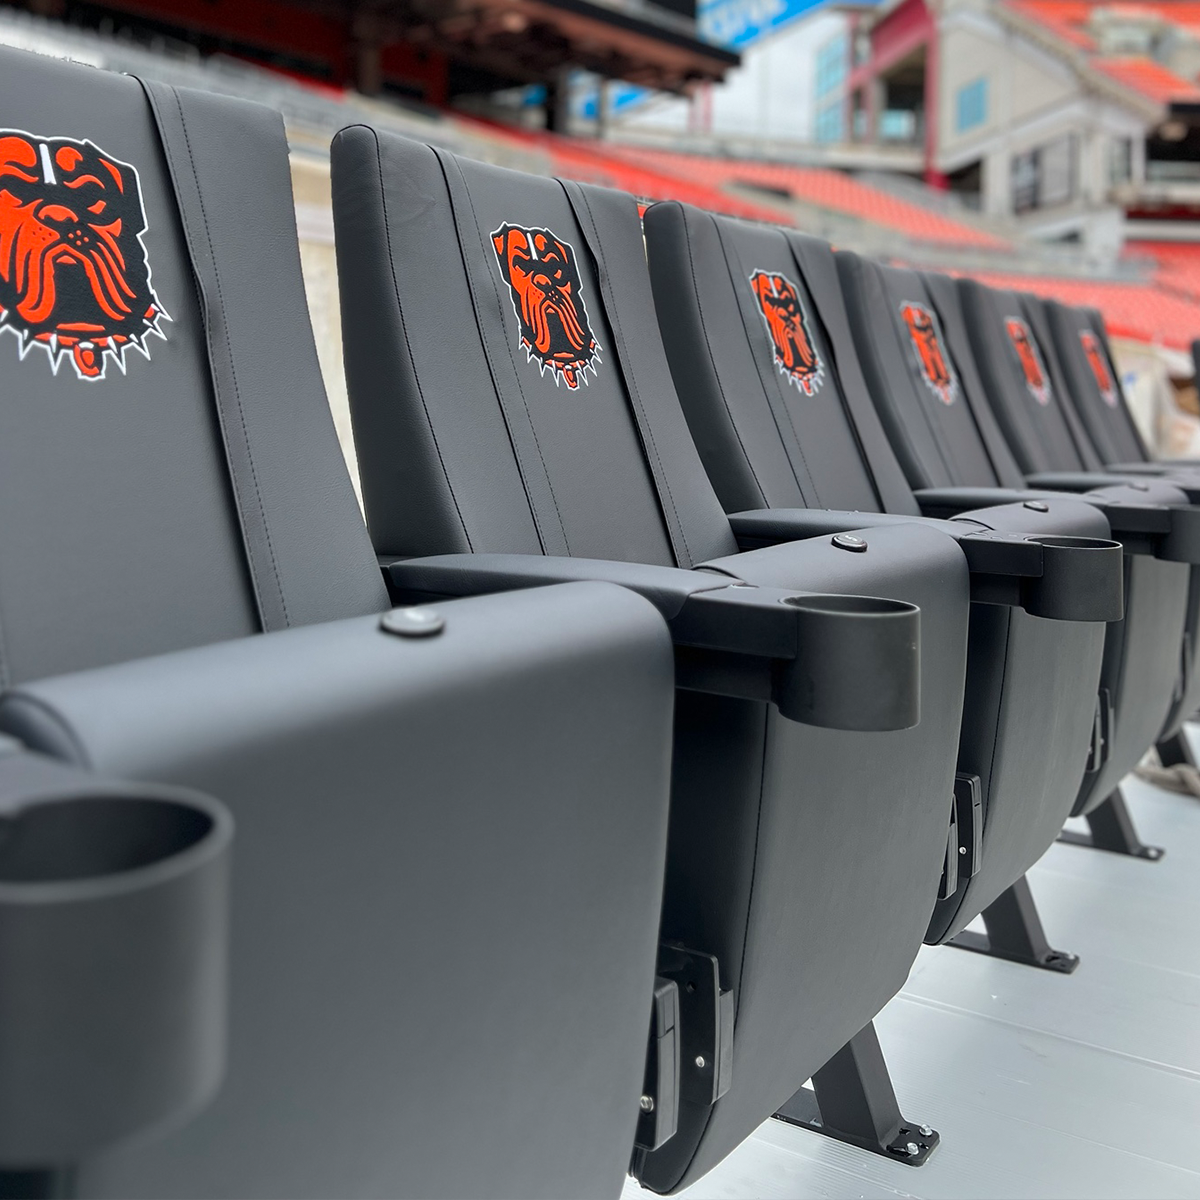 SuiteMax 3.5 VIP Seats with Northwestern Wildcats Logo